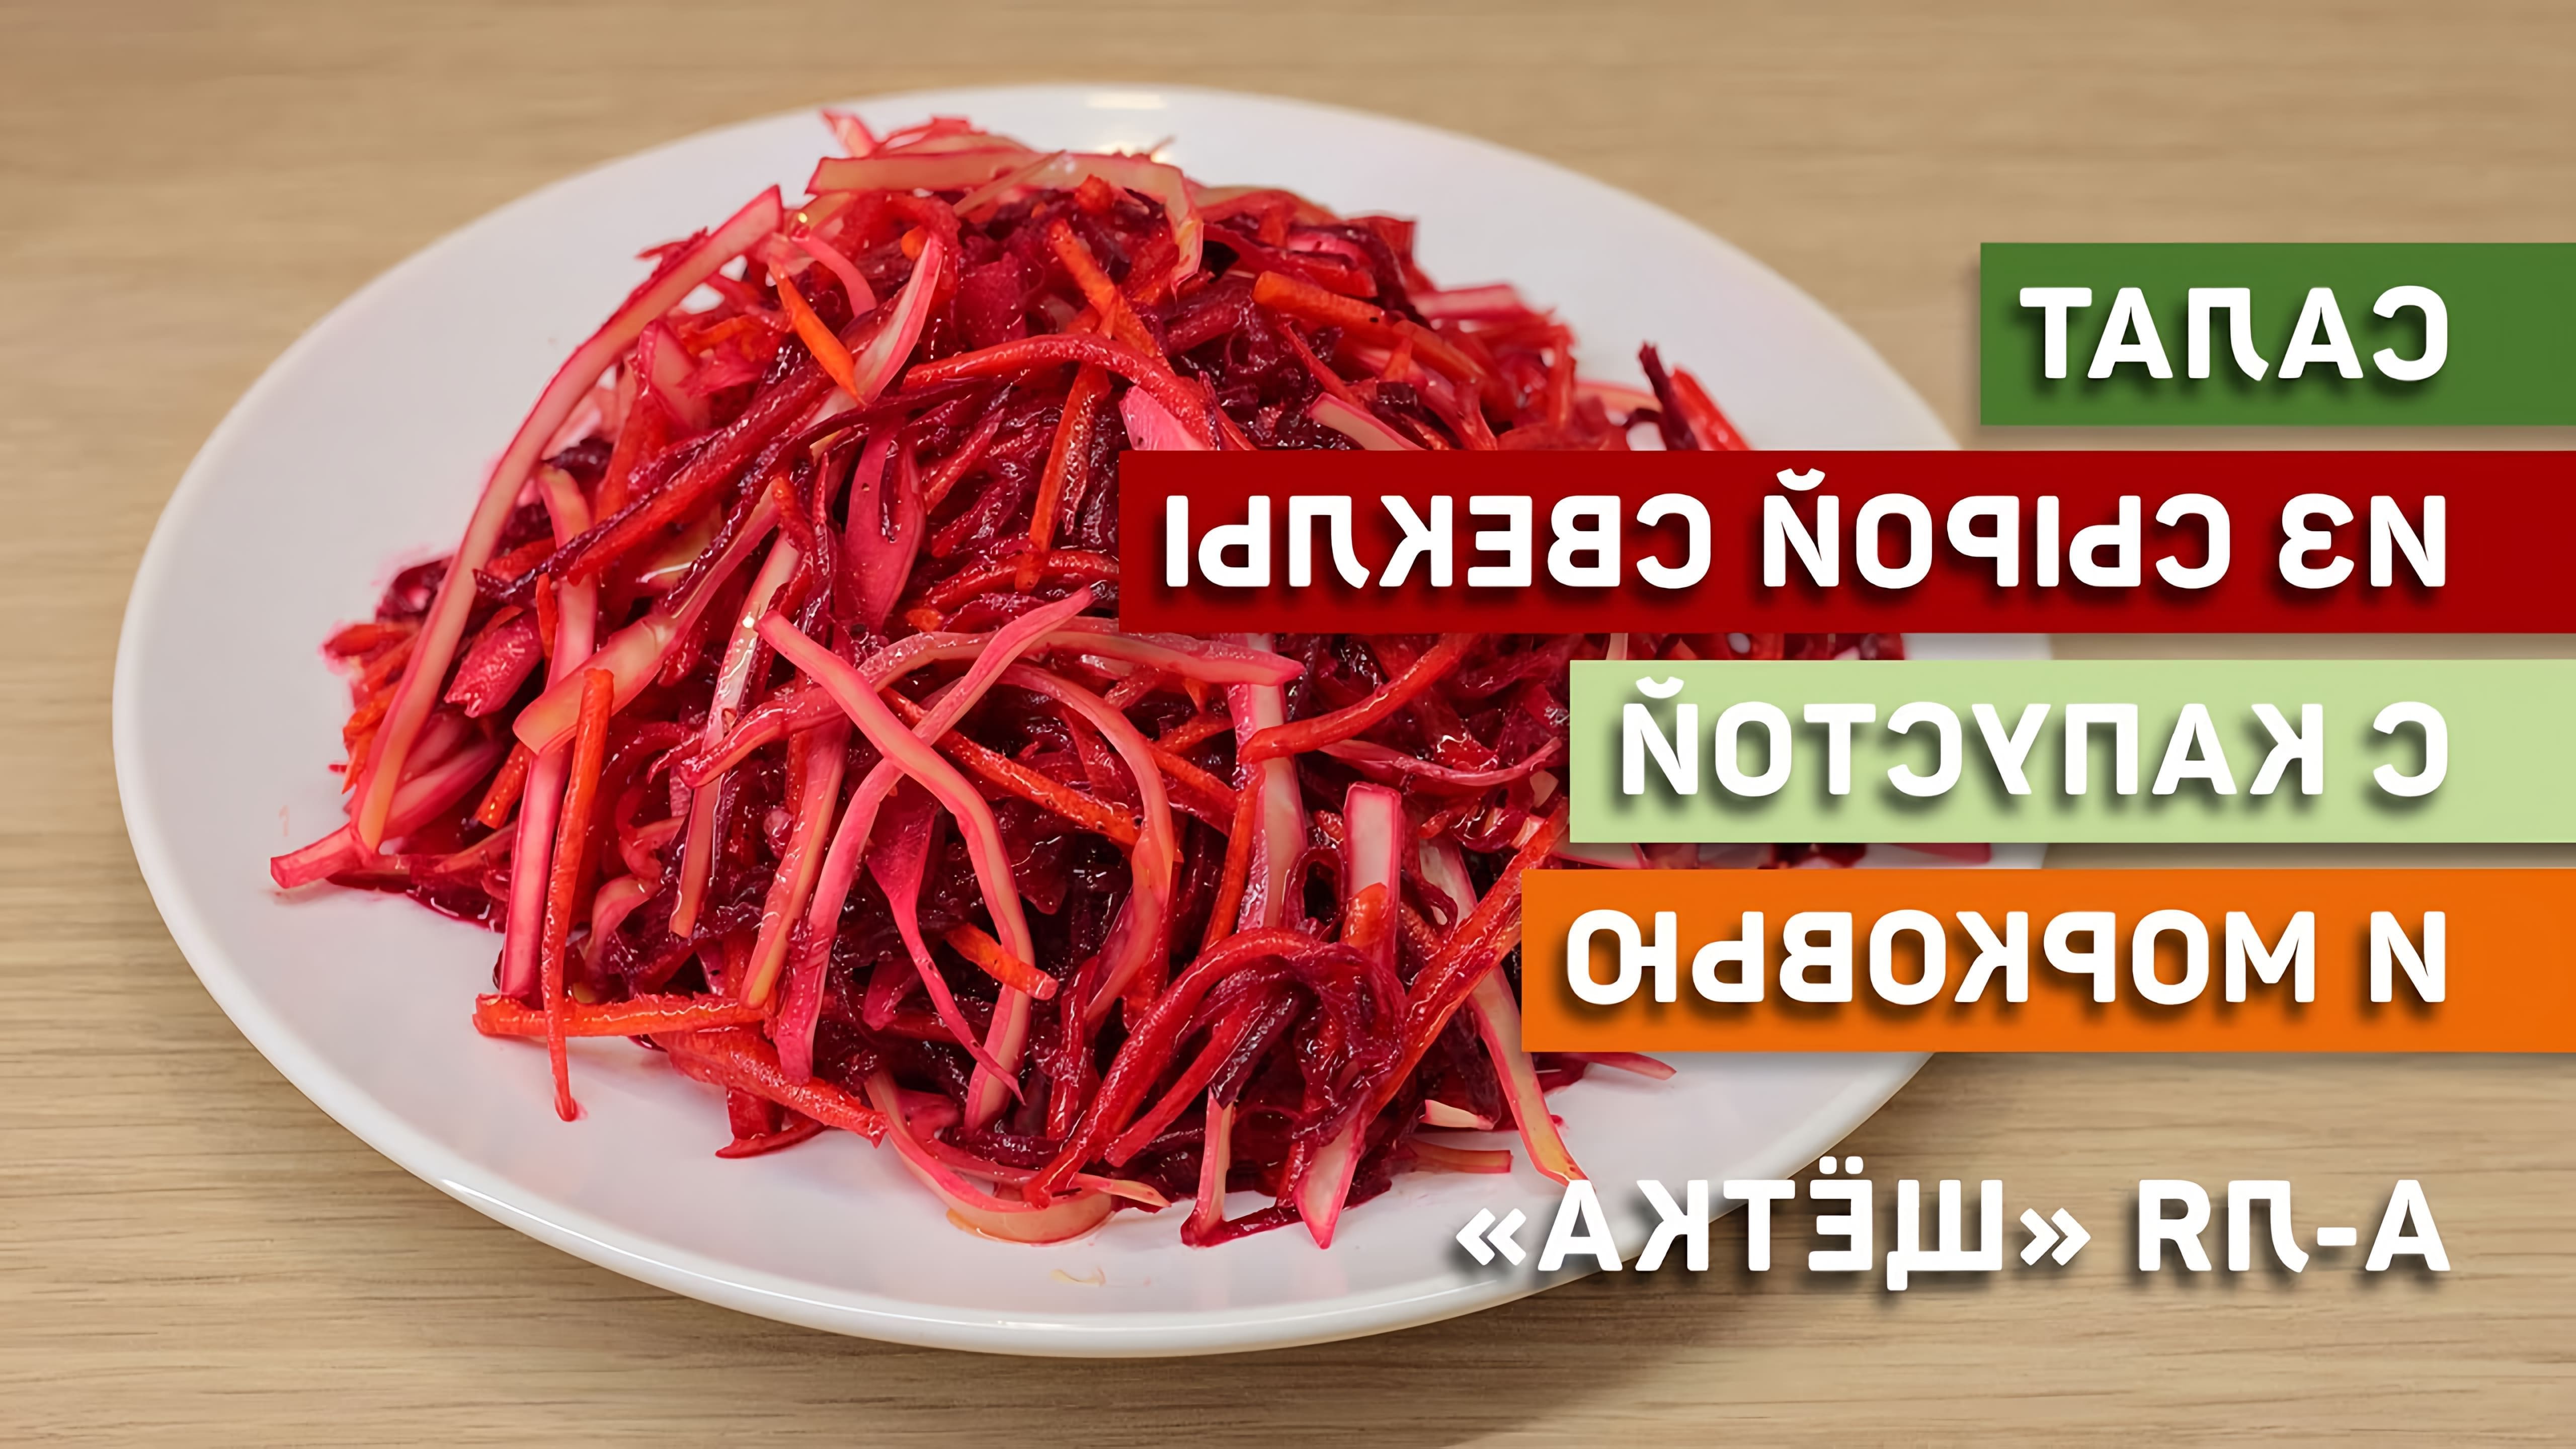 В этом видео демонстрируется рецепт салата из сырой свеклы, капусты и моркови